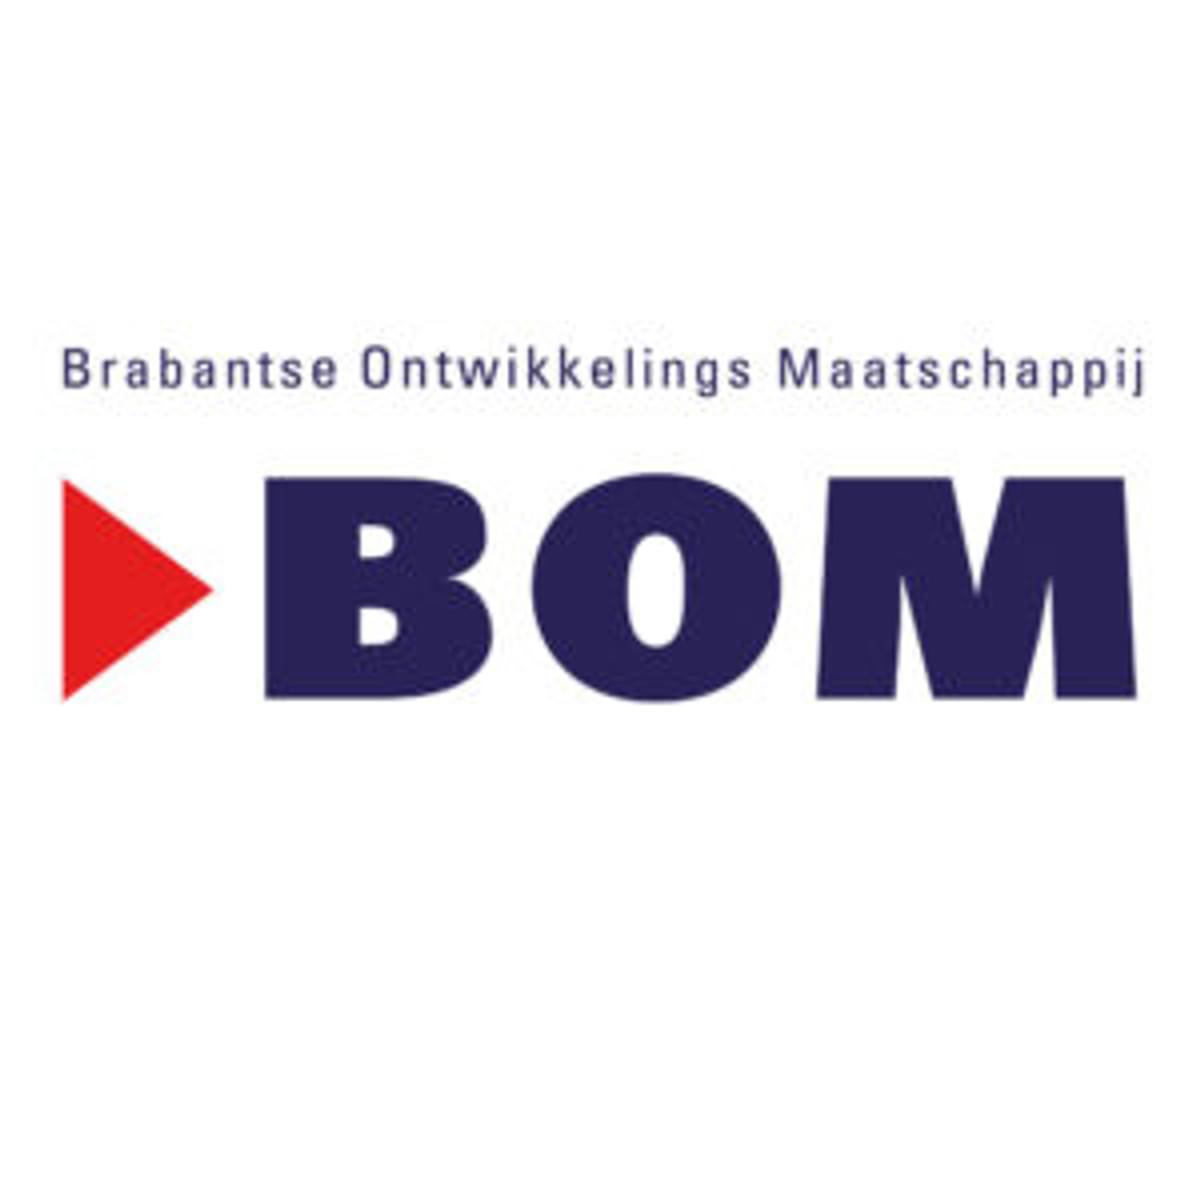 Brabantse Ontwikkelings Maatschappij investeert in data science-bureau Adchieve image